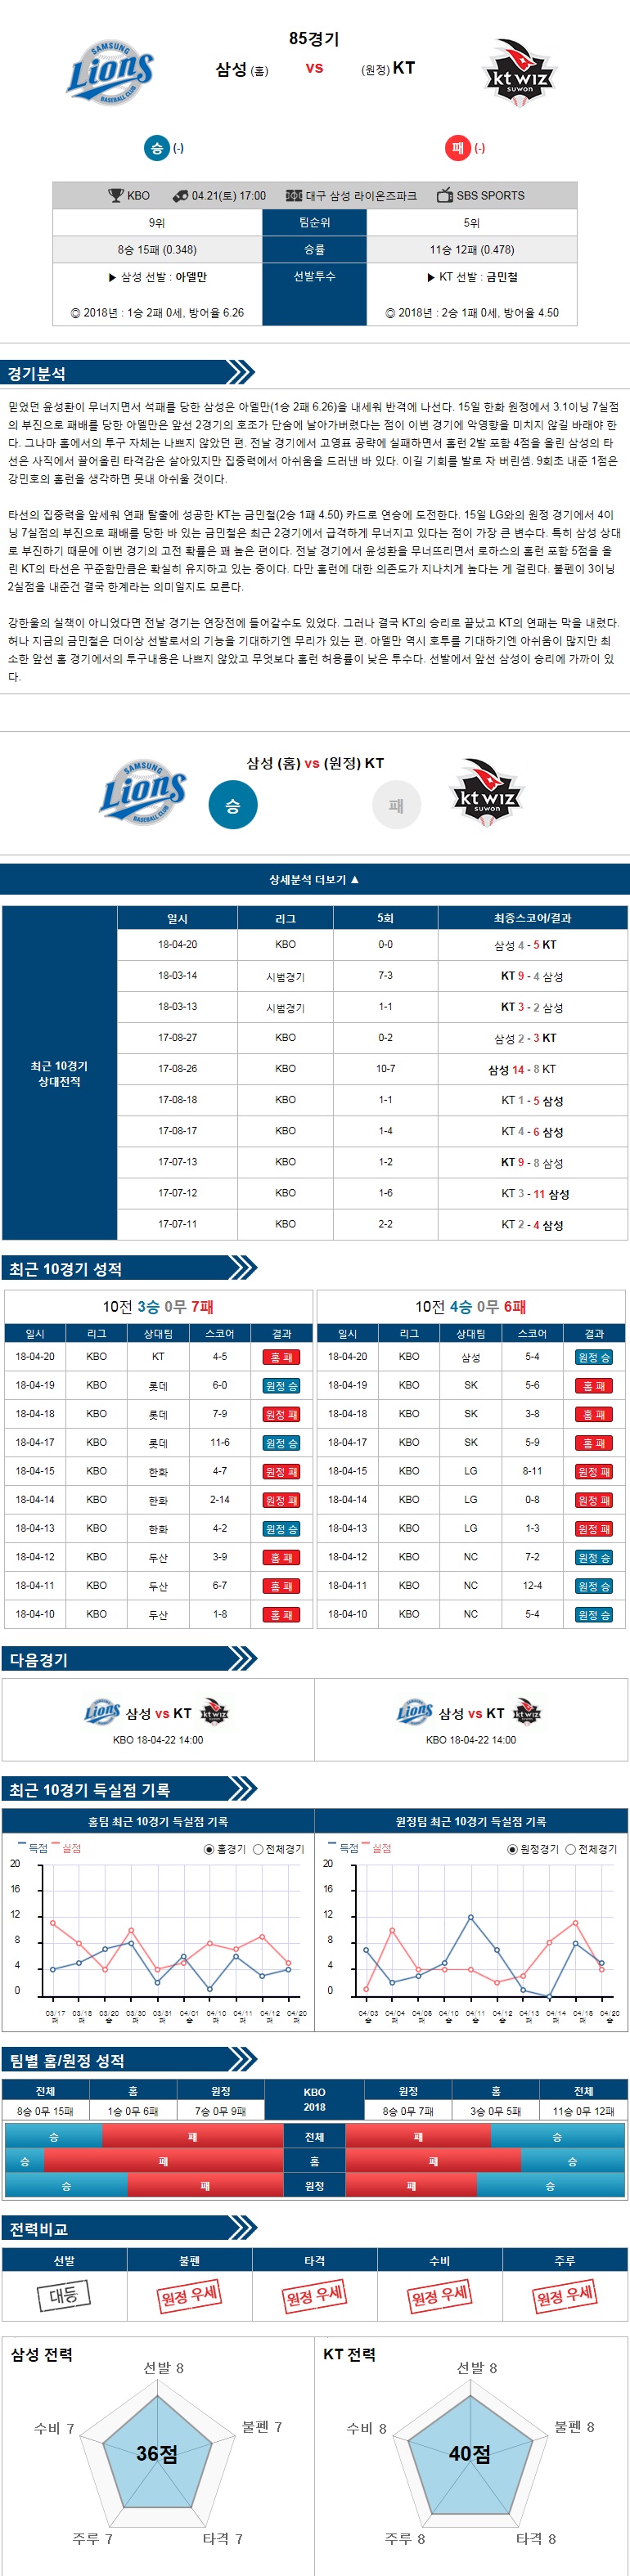 4-21 [KBO] 17:00 야구분석 삼성 vs KT